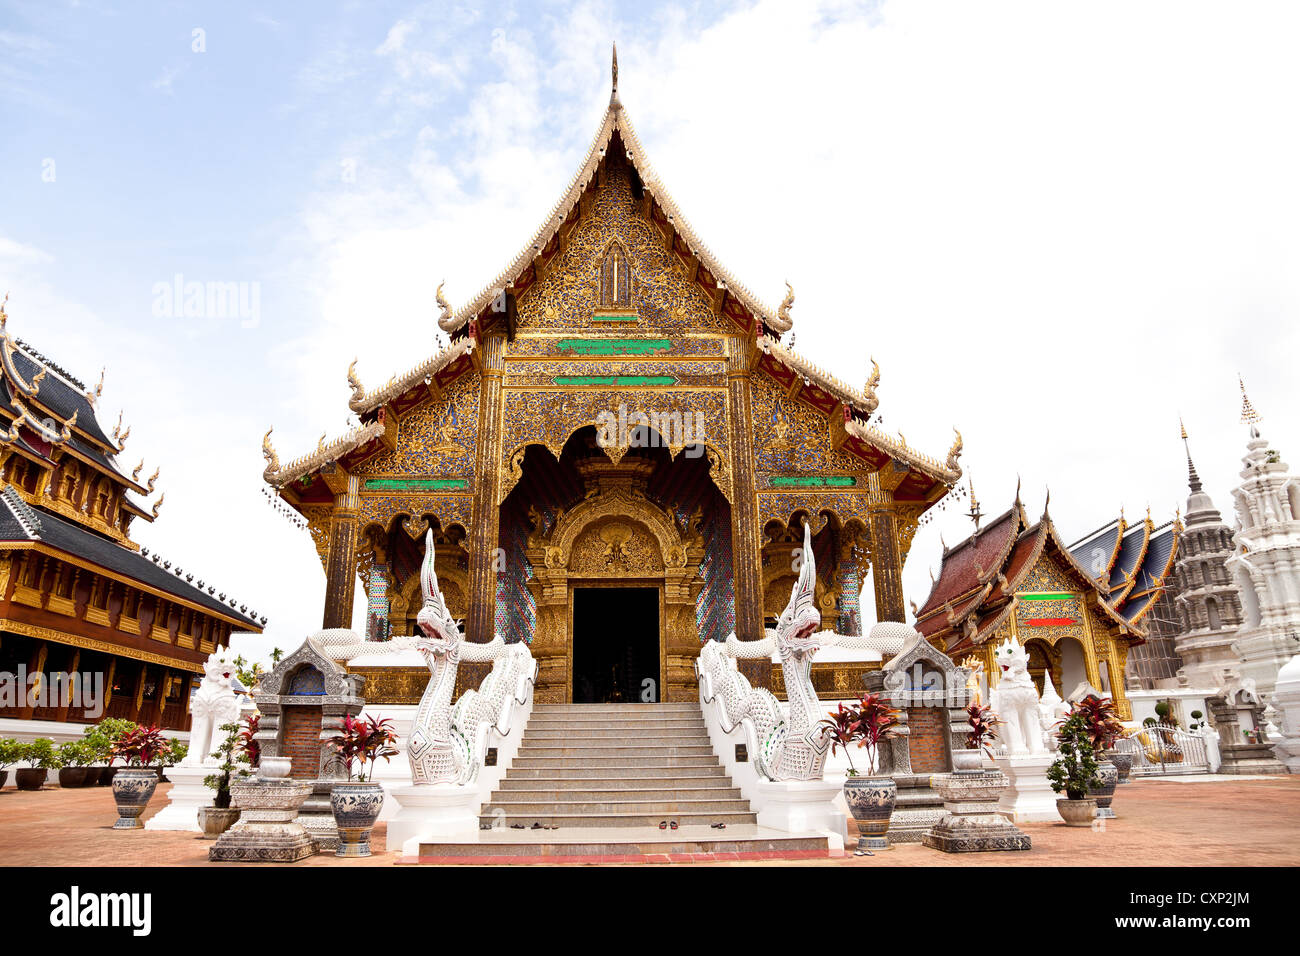 lanna style buddhist temple Stock Photo